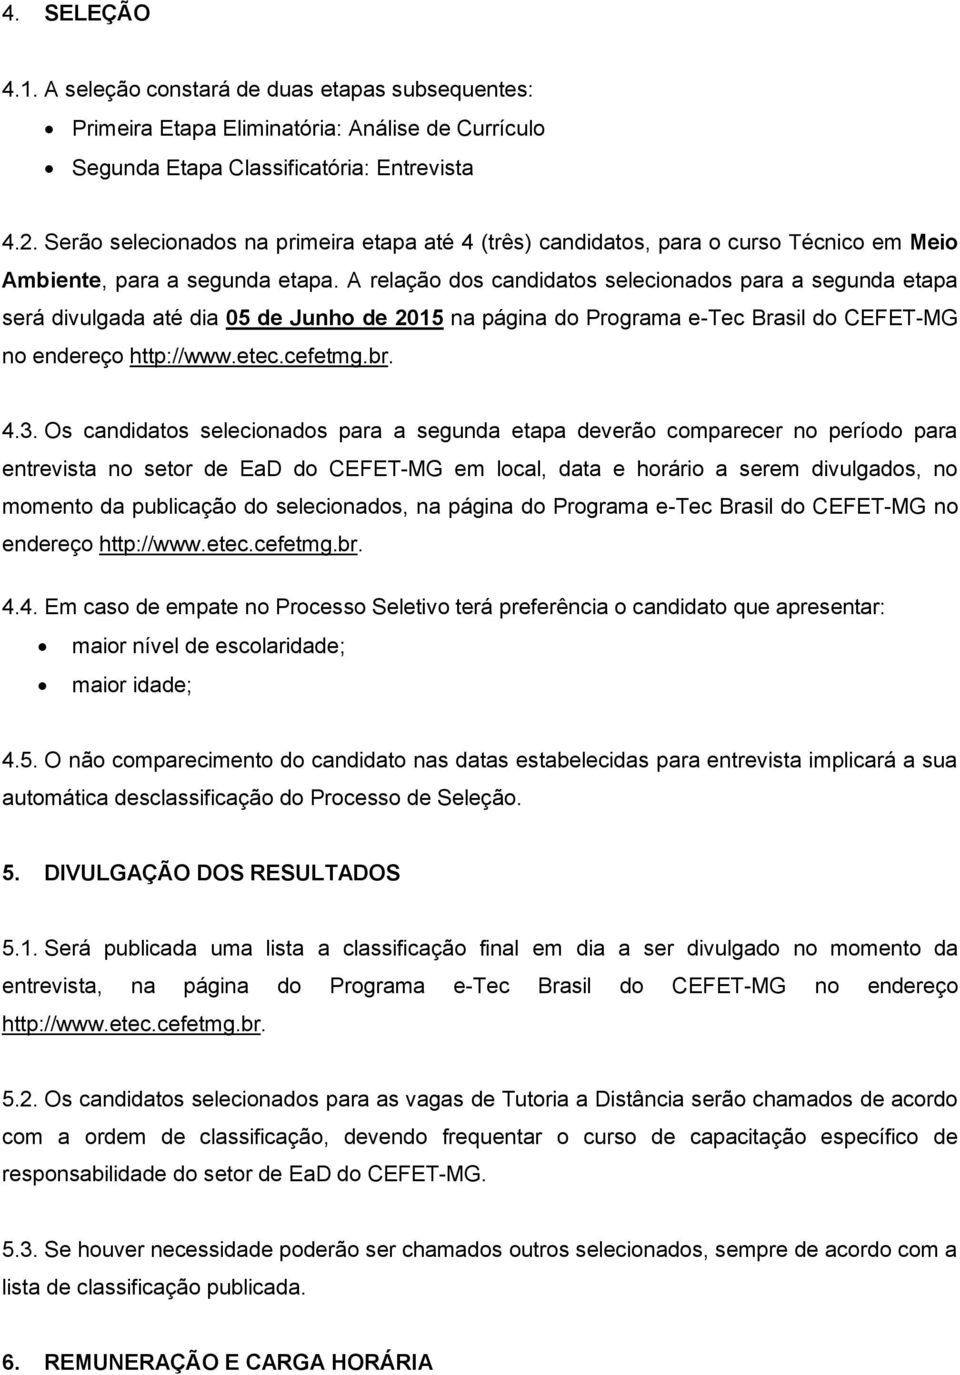 A relação dos candidatos selecionados para a segunda etapa será divulgada até dia 05 de Junho de 2015 na página do Programa e-tec Brasil do CEFET-MG no endereço http://www.etec.cefetmg.br. 4.3.